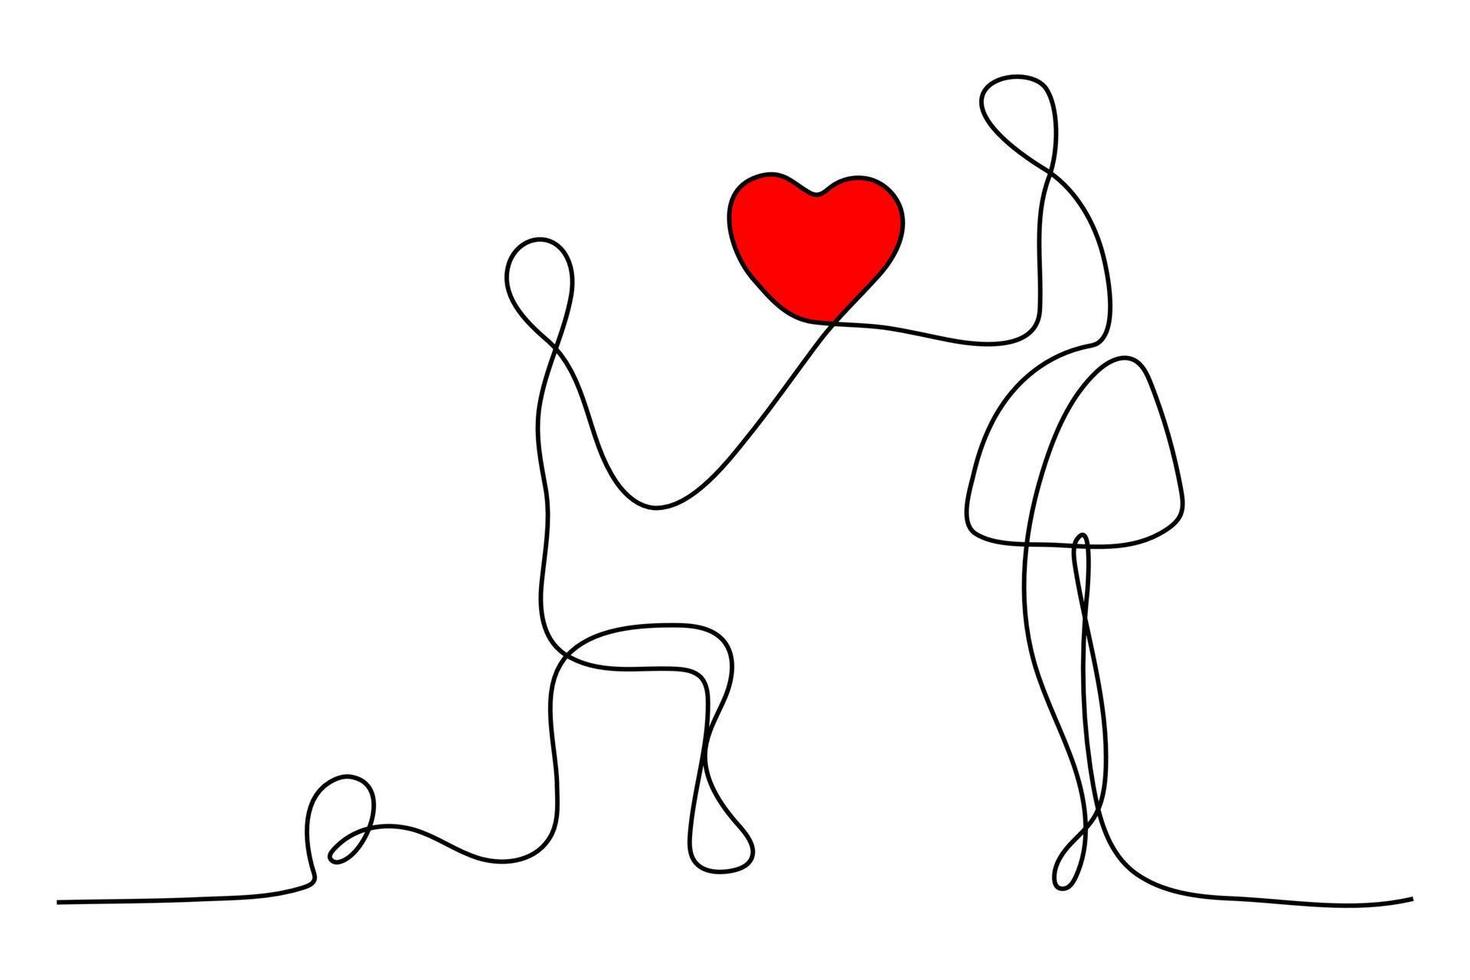 ilustração em vetor desenho de linha contínua. homens se ajoelham para dar corações e surpreender a silhueta das mulheres isolada no fundo branco.